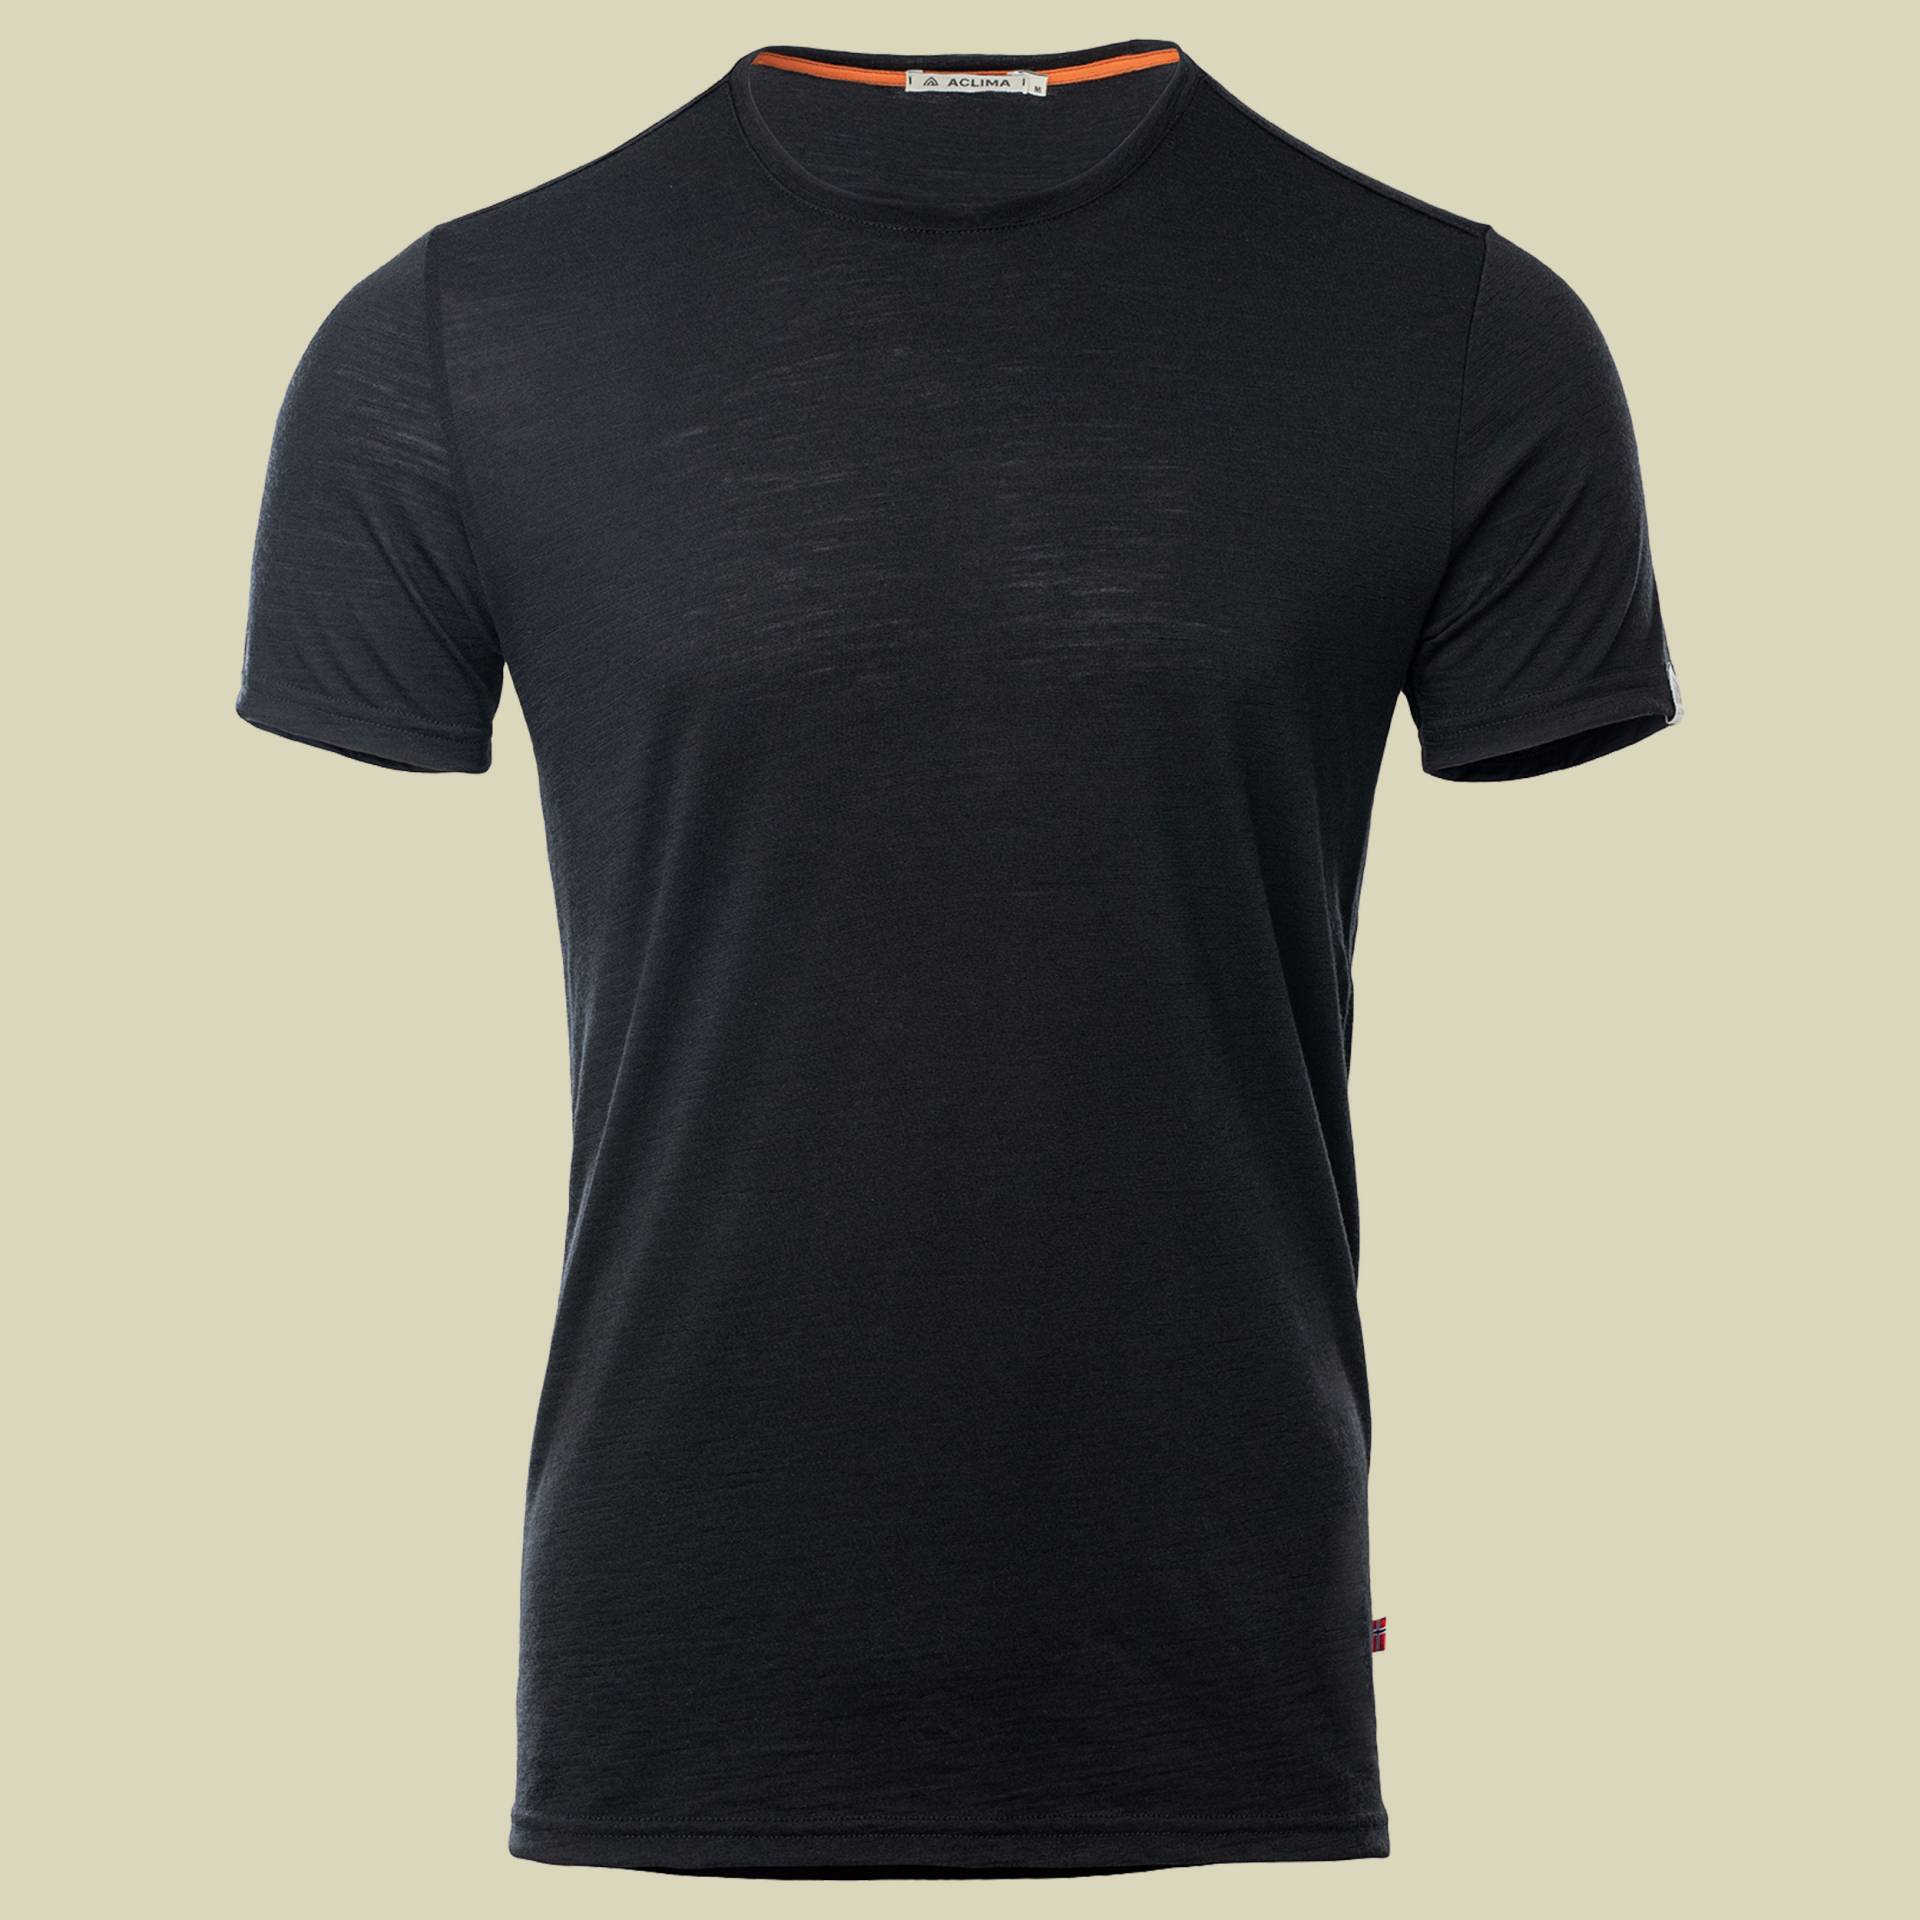 LightWool T-Shirt Men schwarz L - jet black von aclima